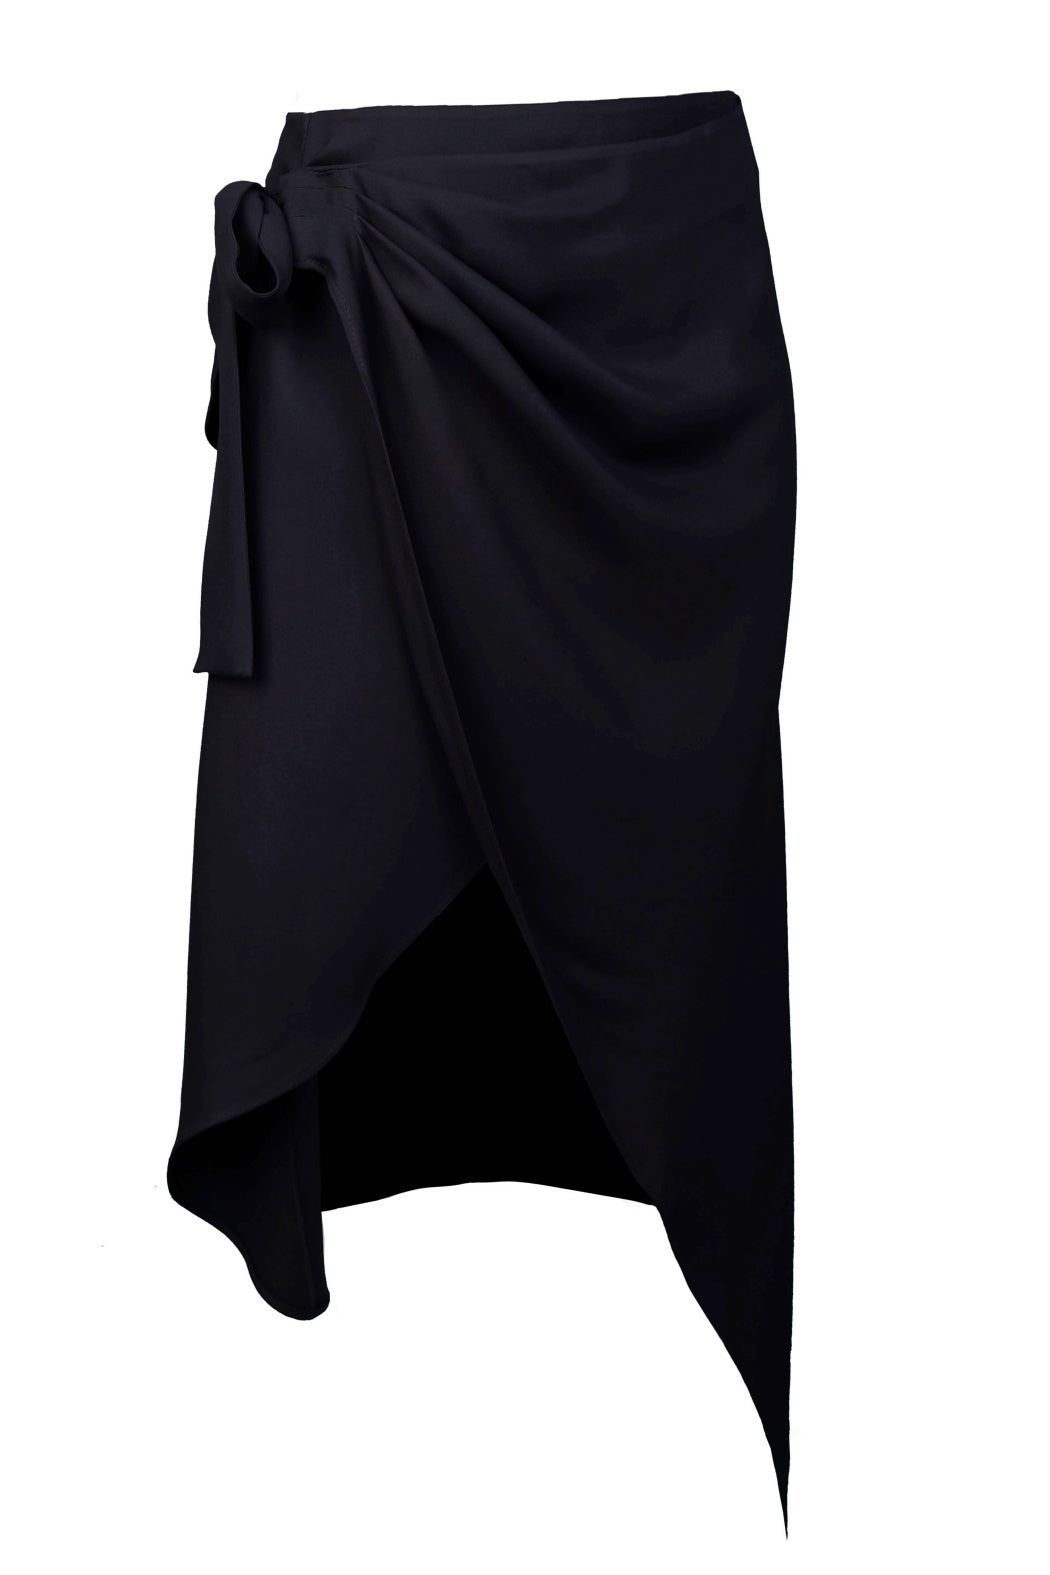 Tokyo Black Midi Length Wrapped Skirt